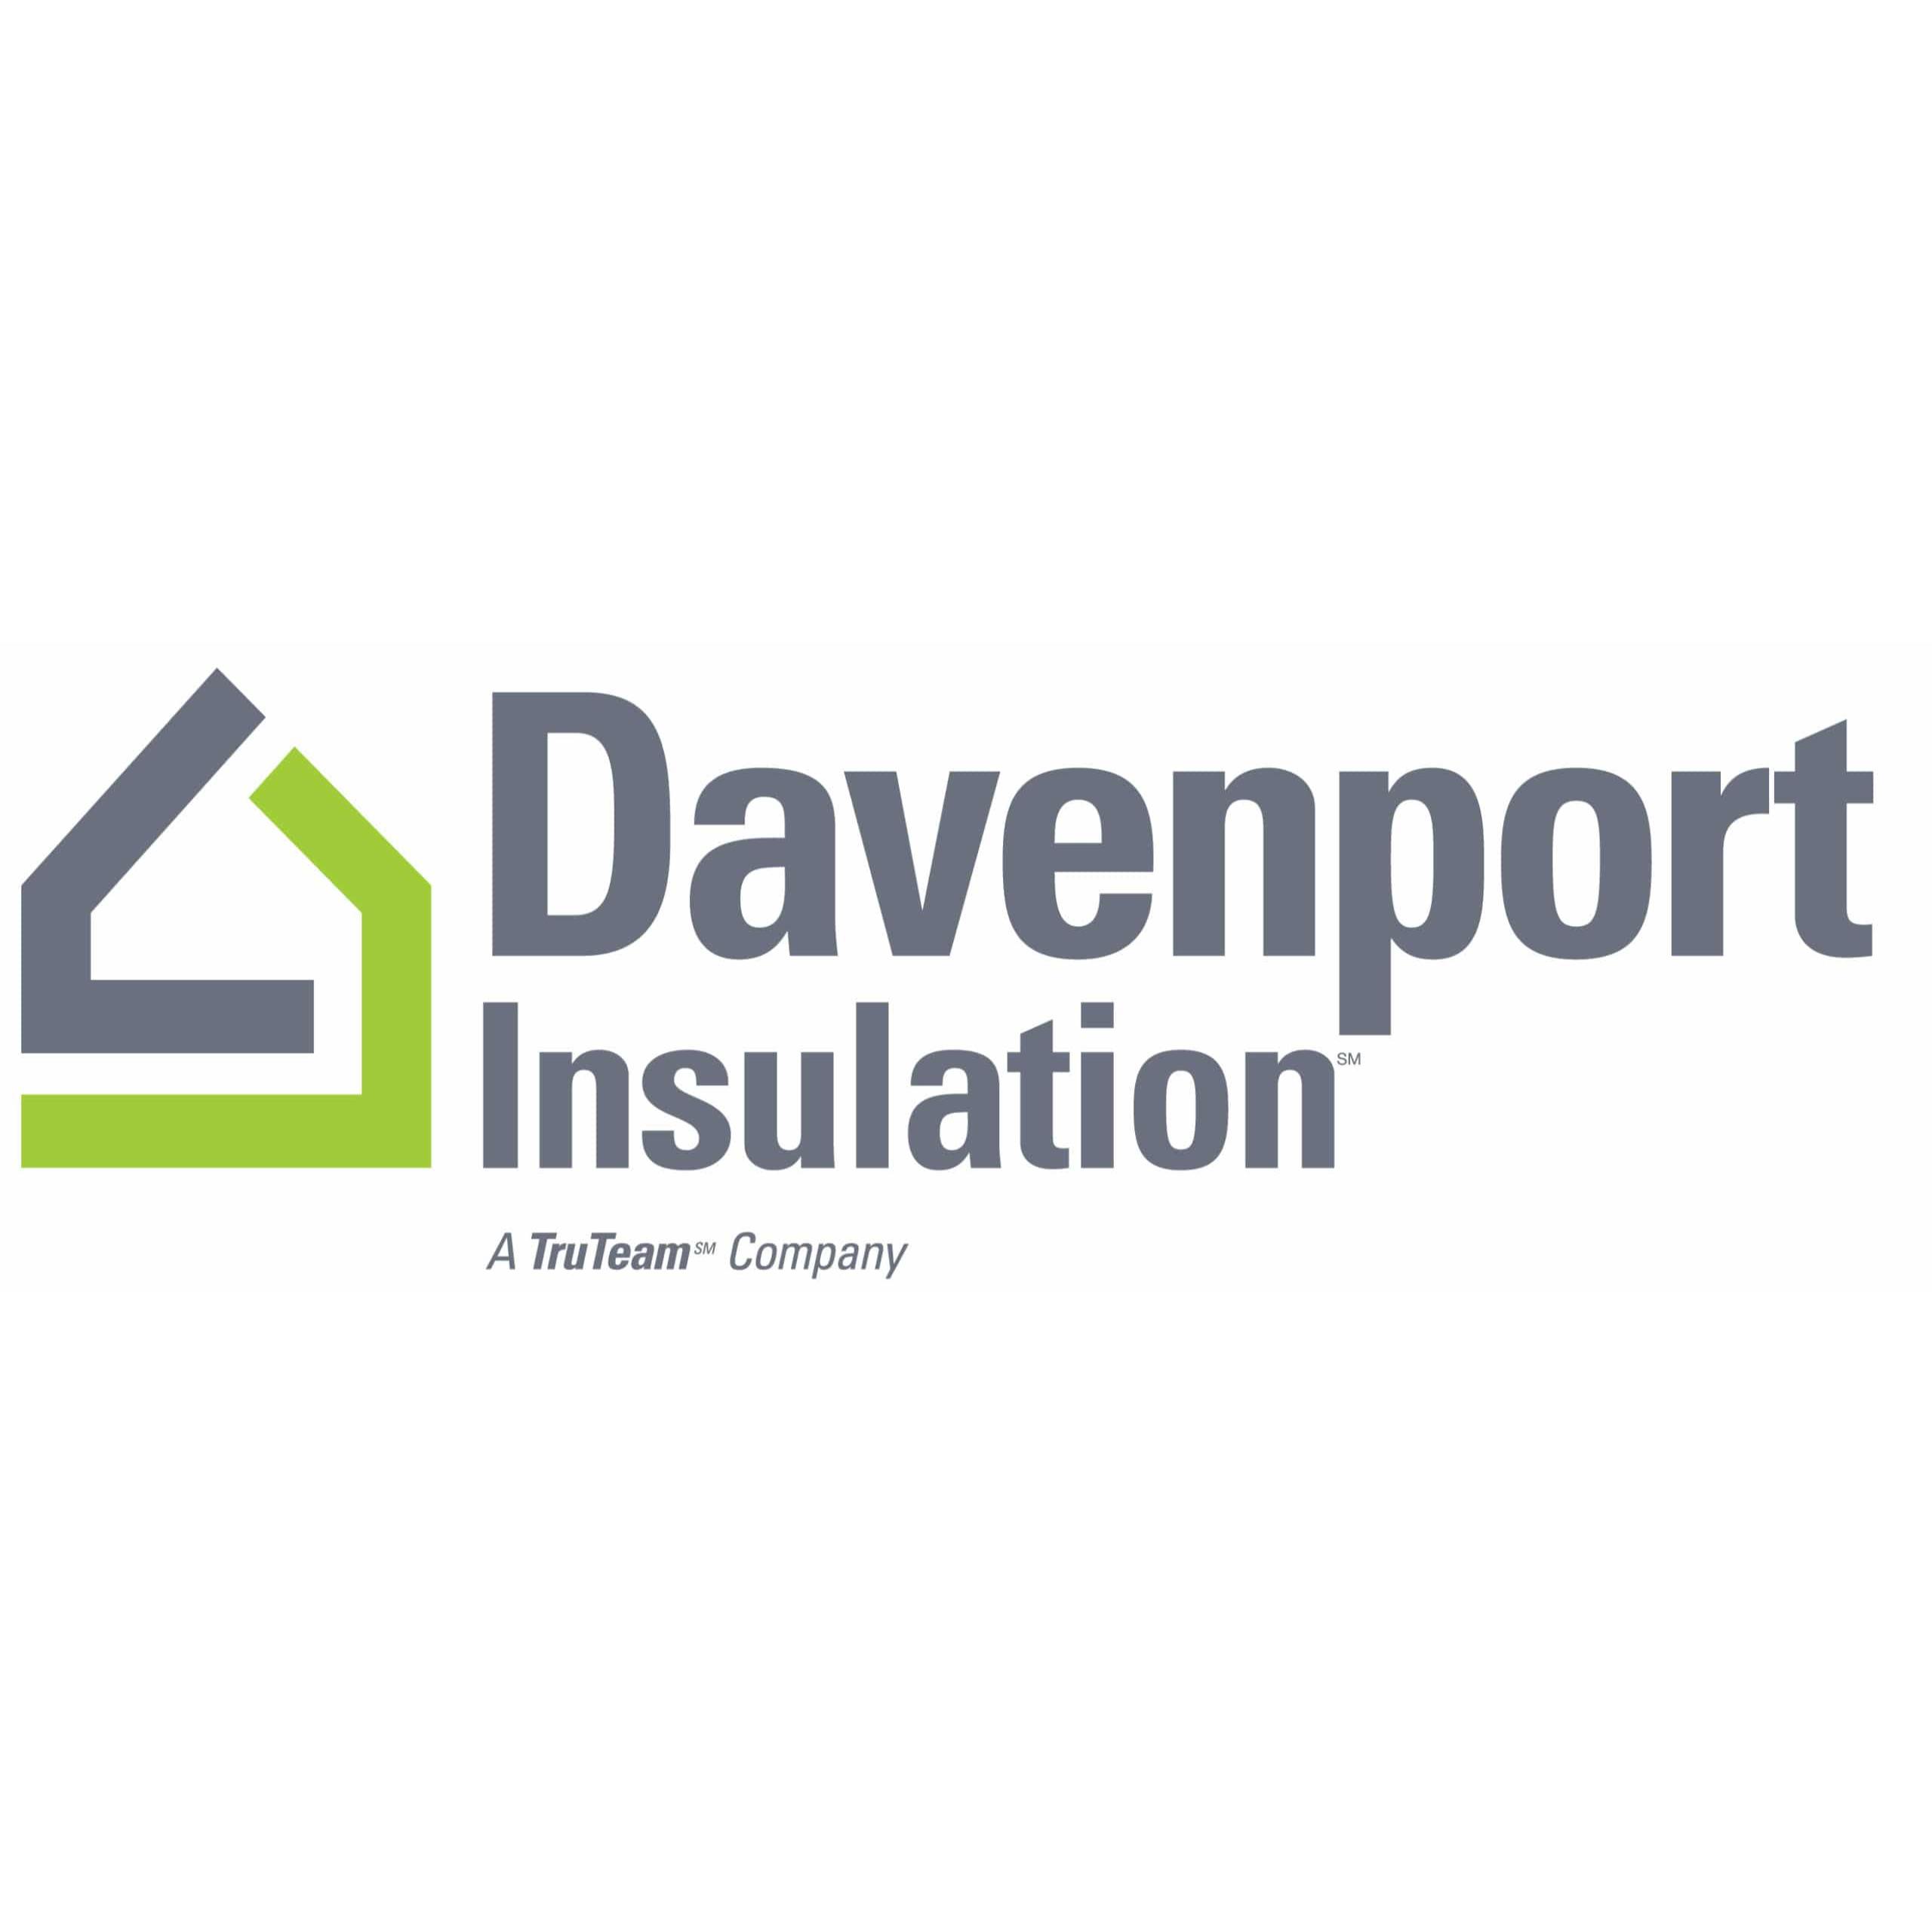 Davenport Insulation